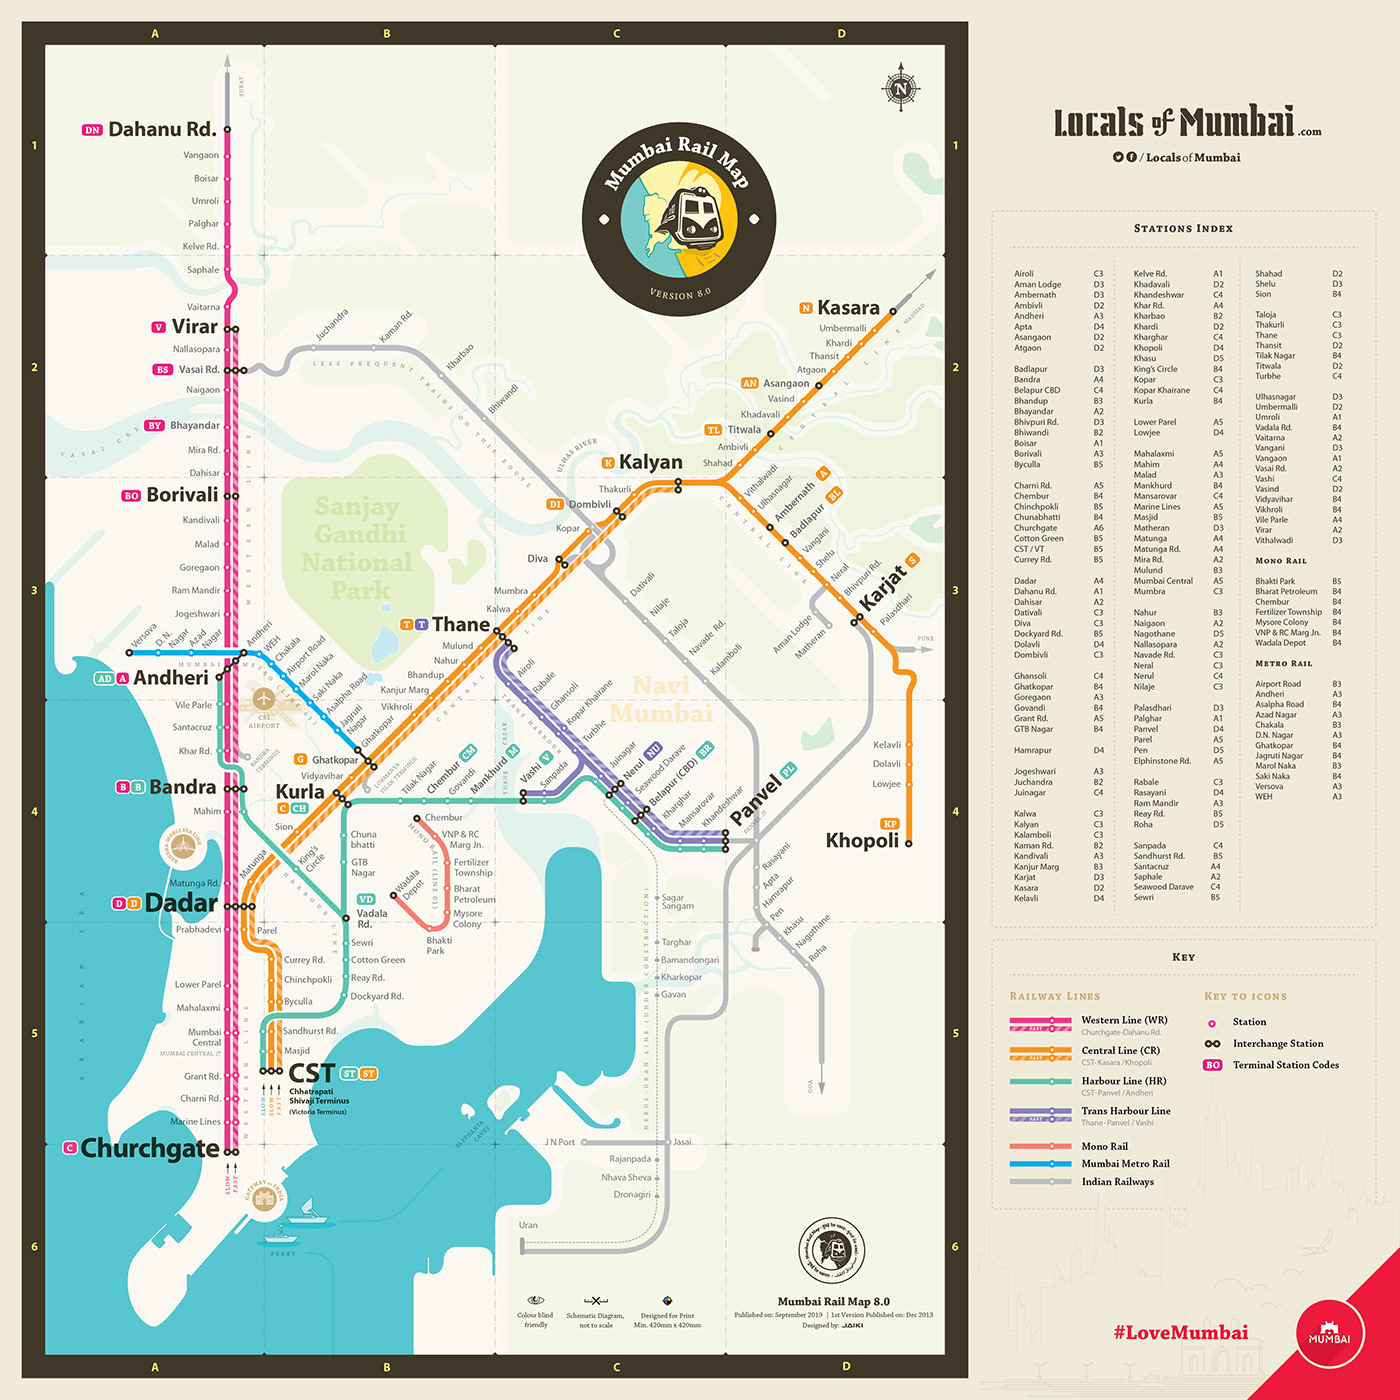 map maps MUMBAI print rail schematic